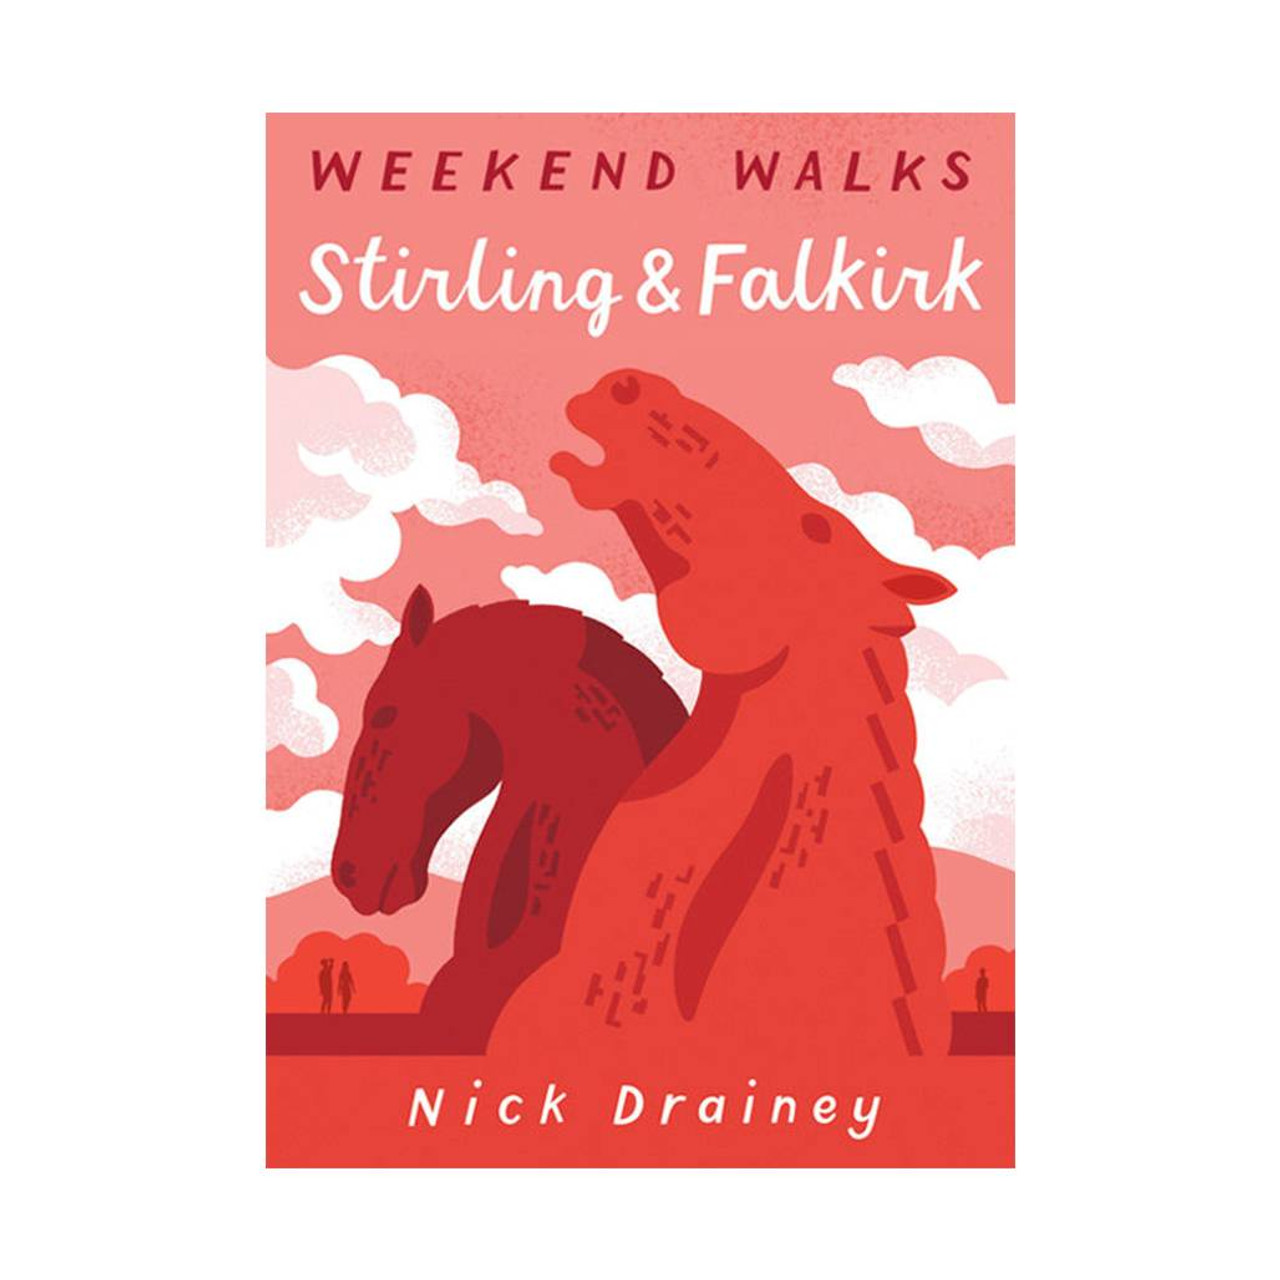 StirlingandFalkirk: Weekend Walks